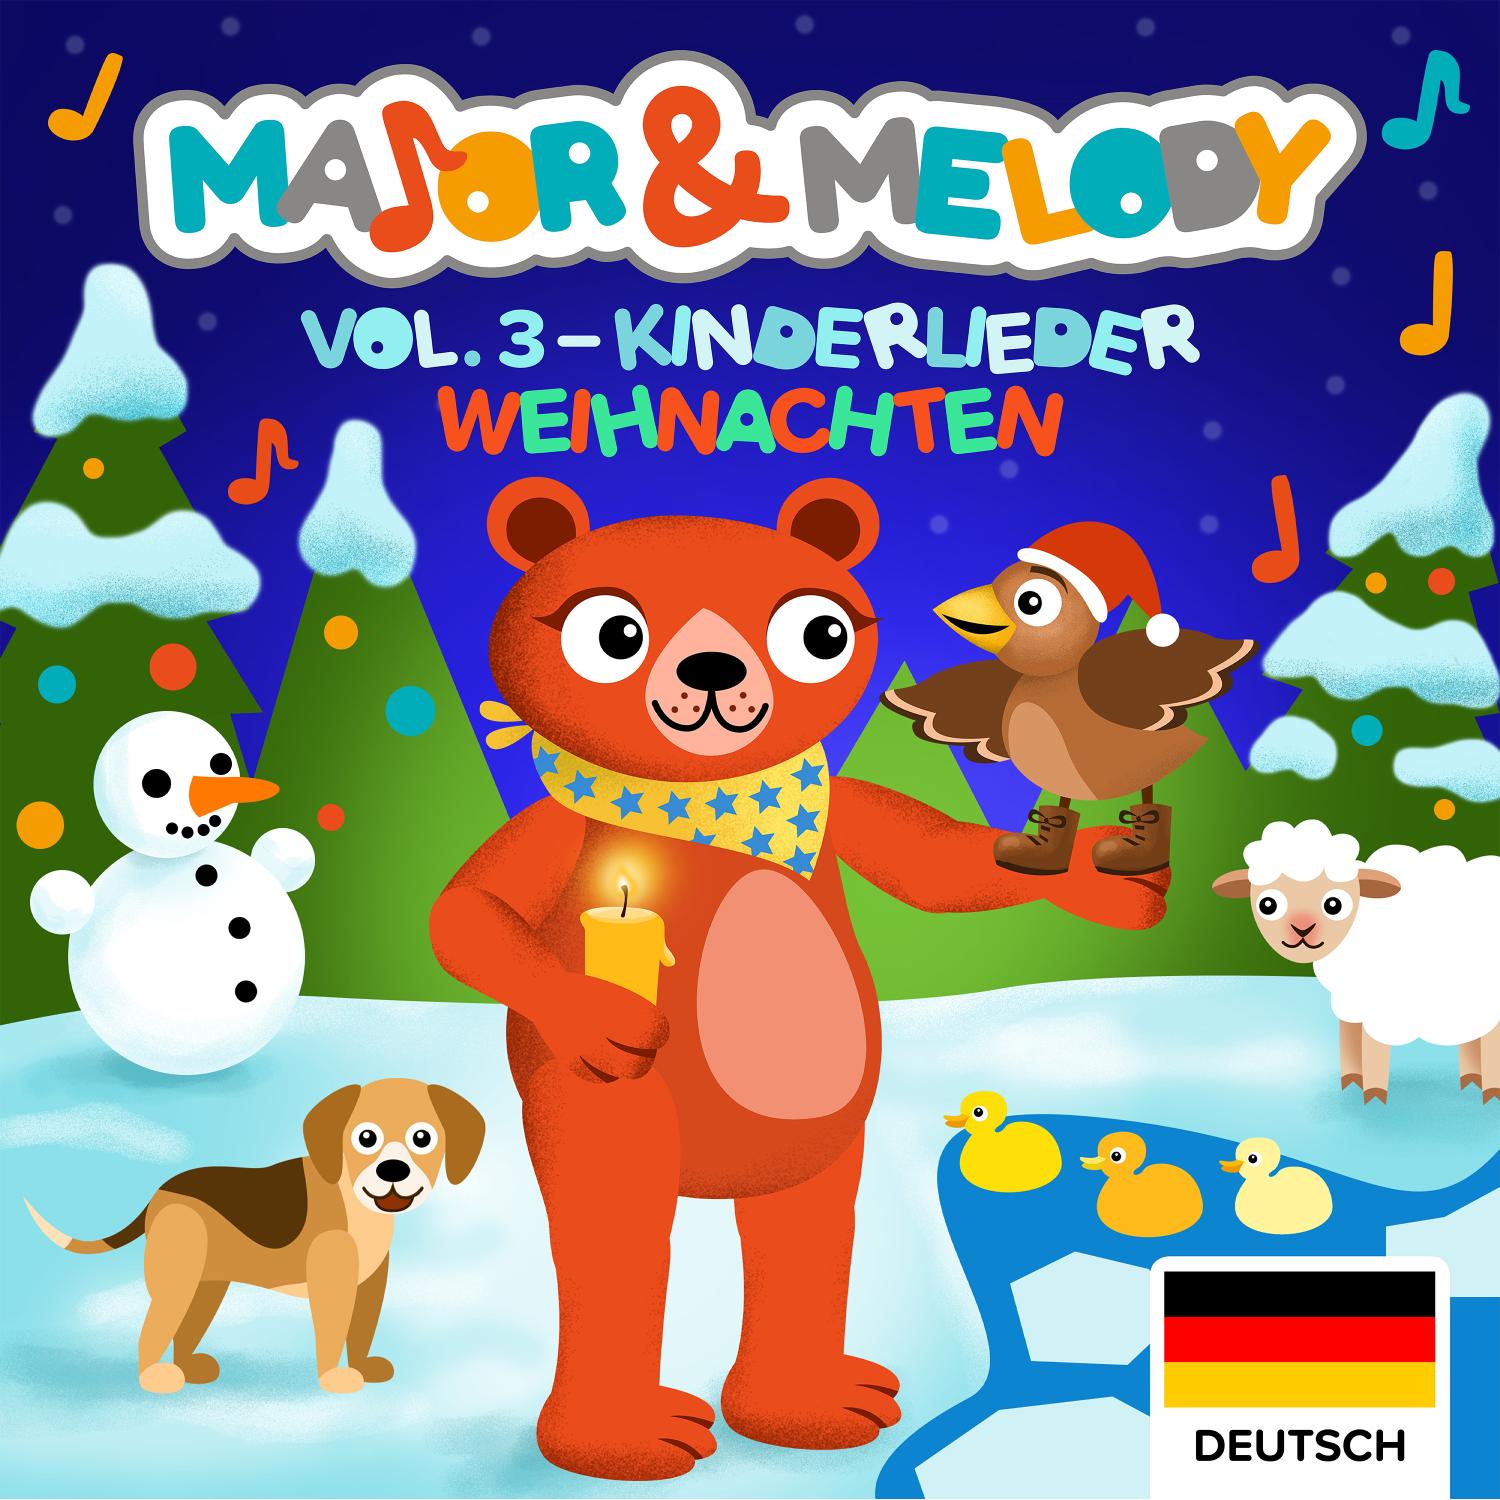 Major & Melody: Kinderlieder - Vol.3 Weihnachten